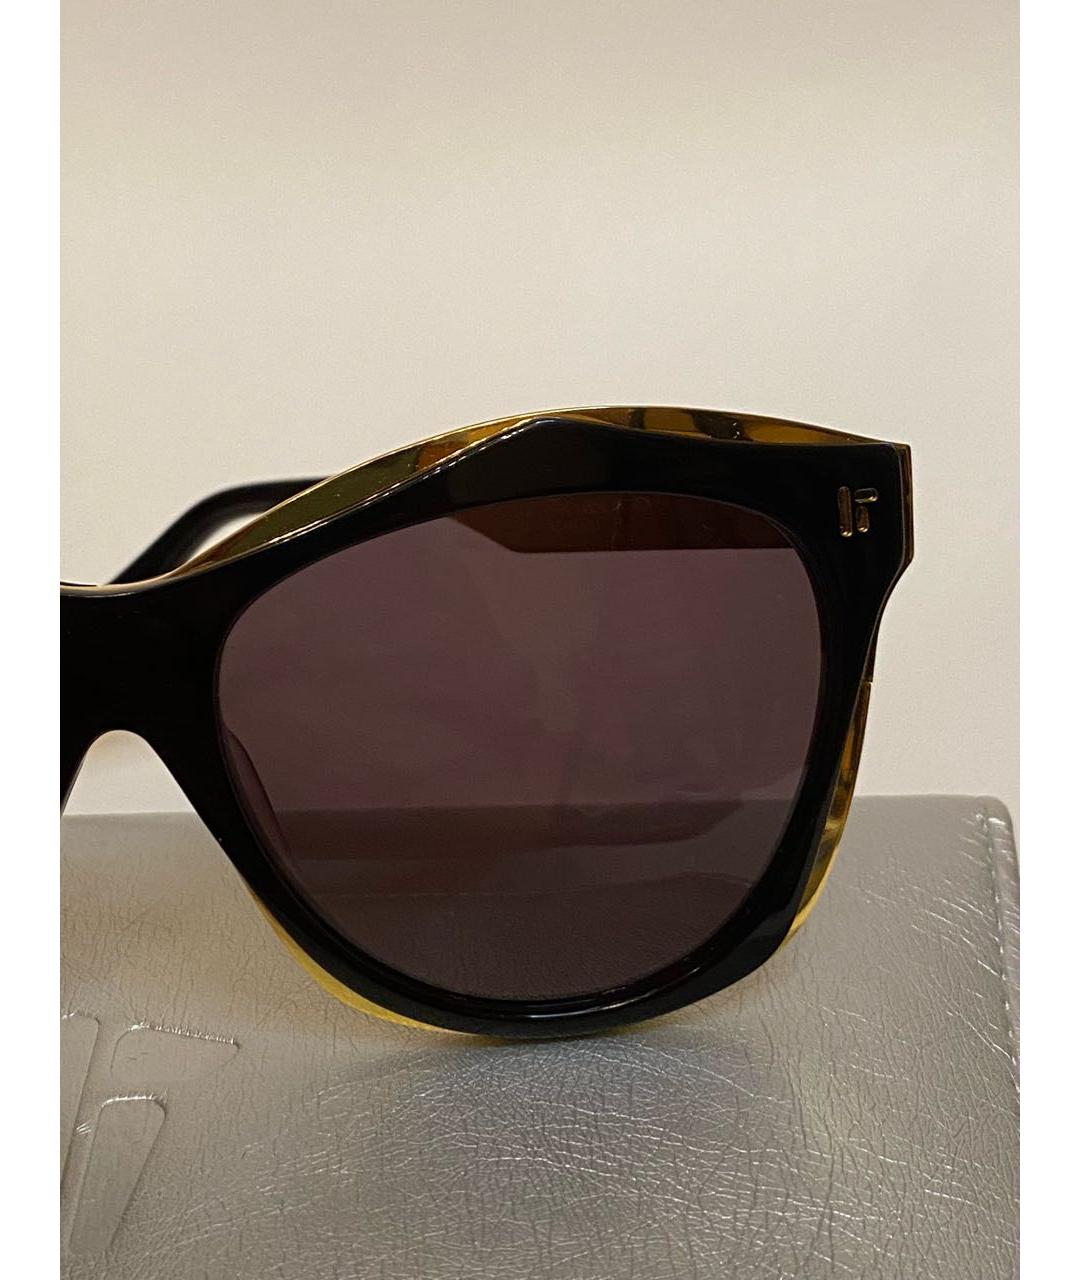 IRRESISTOR Черные пластиковые солнцезащитные очки, фото 5